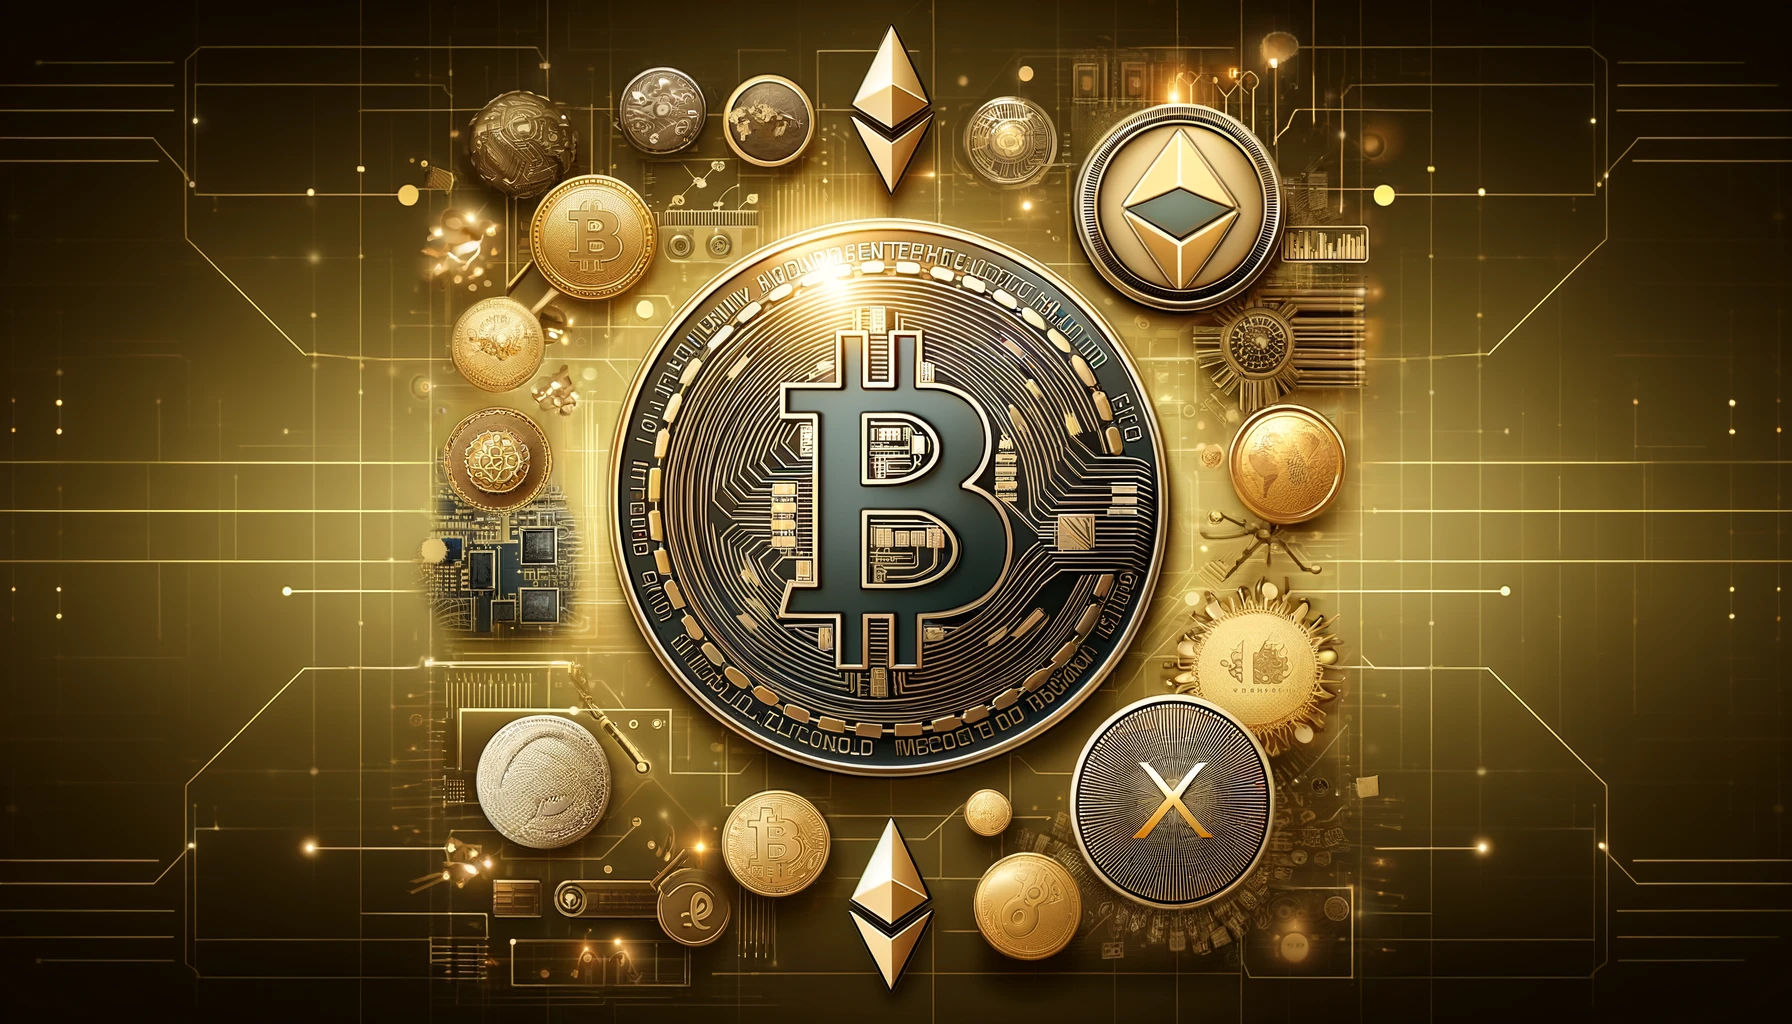 ゴールドベースの背景にビットコイン、イーサリアムなどの仮想通貨がデジタル的に描かれたアイキャッチ画像